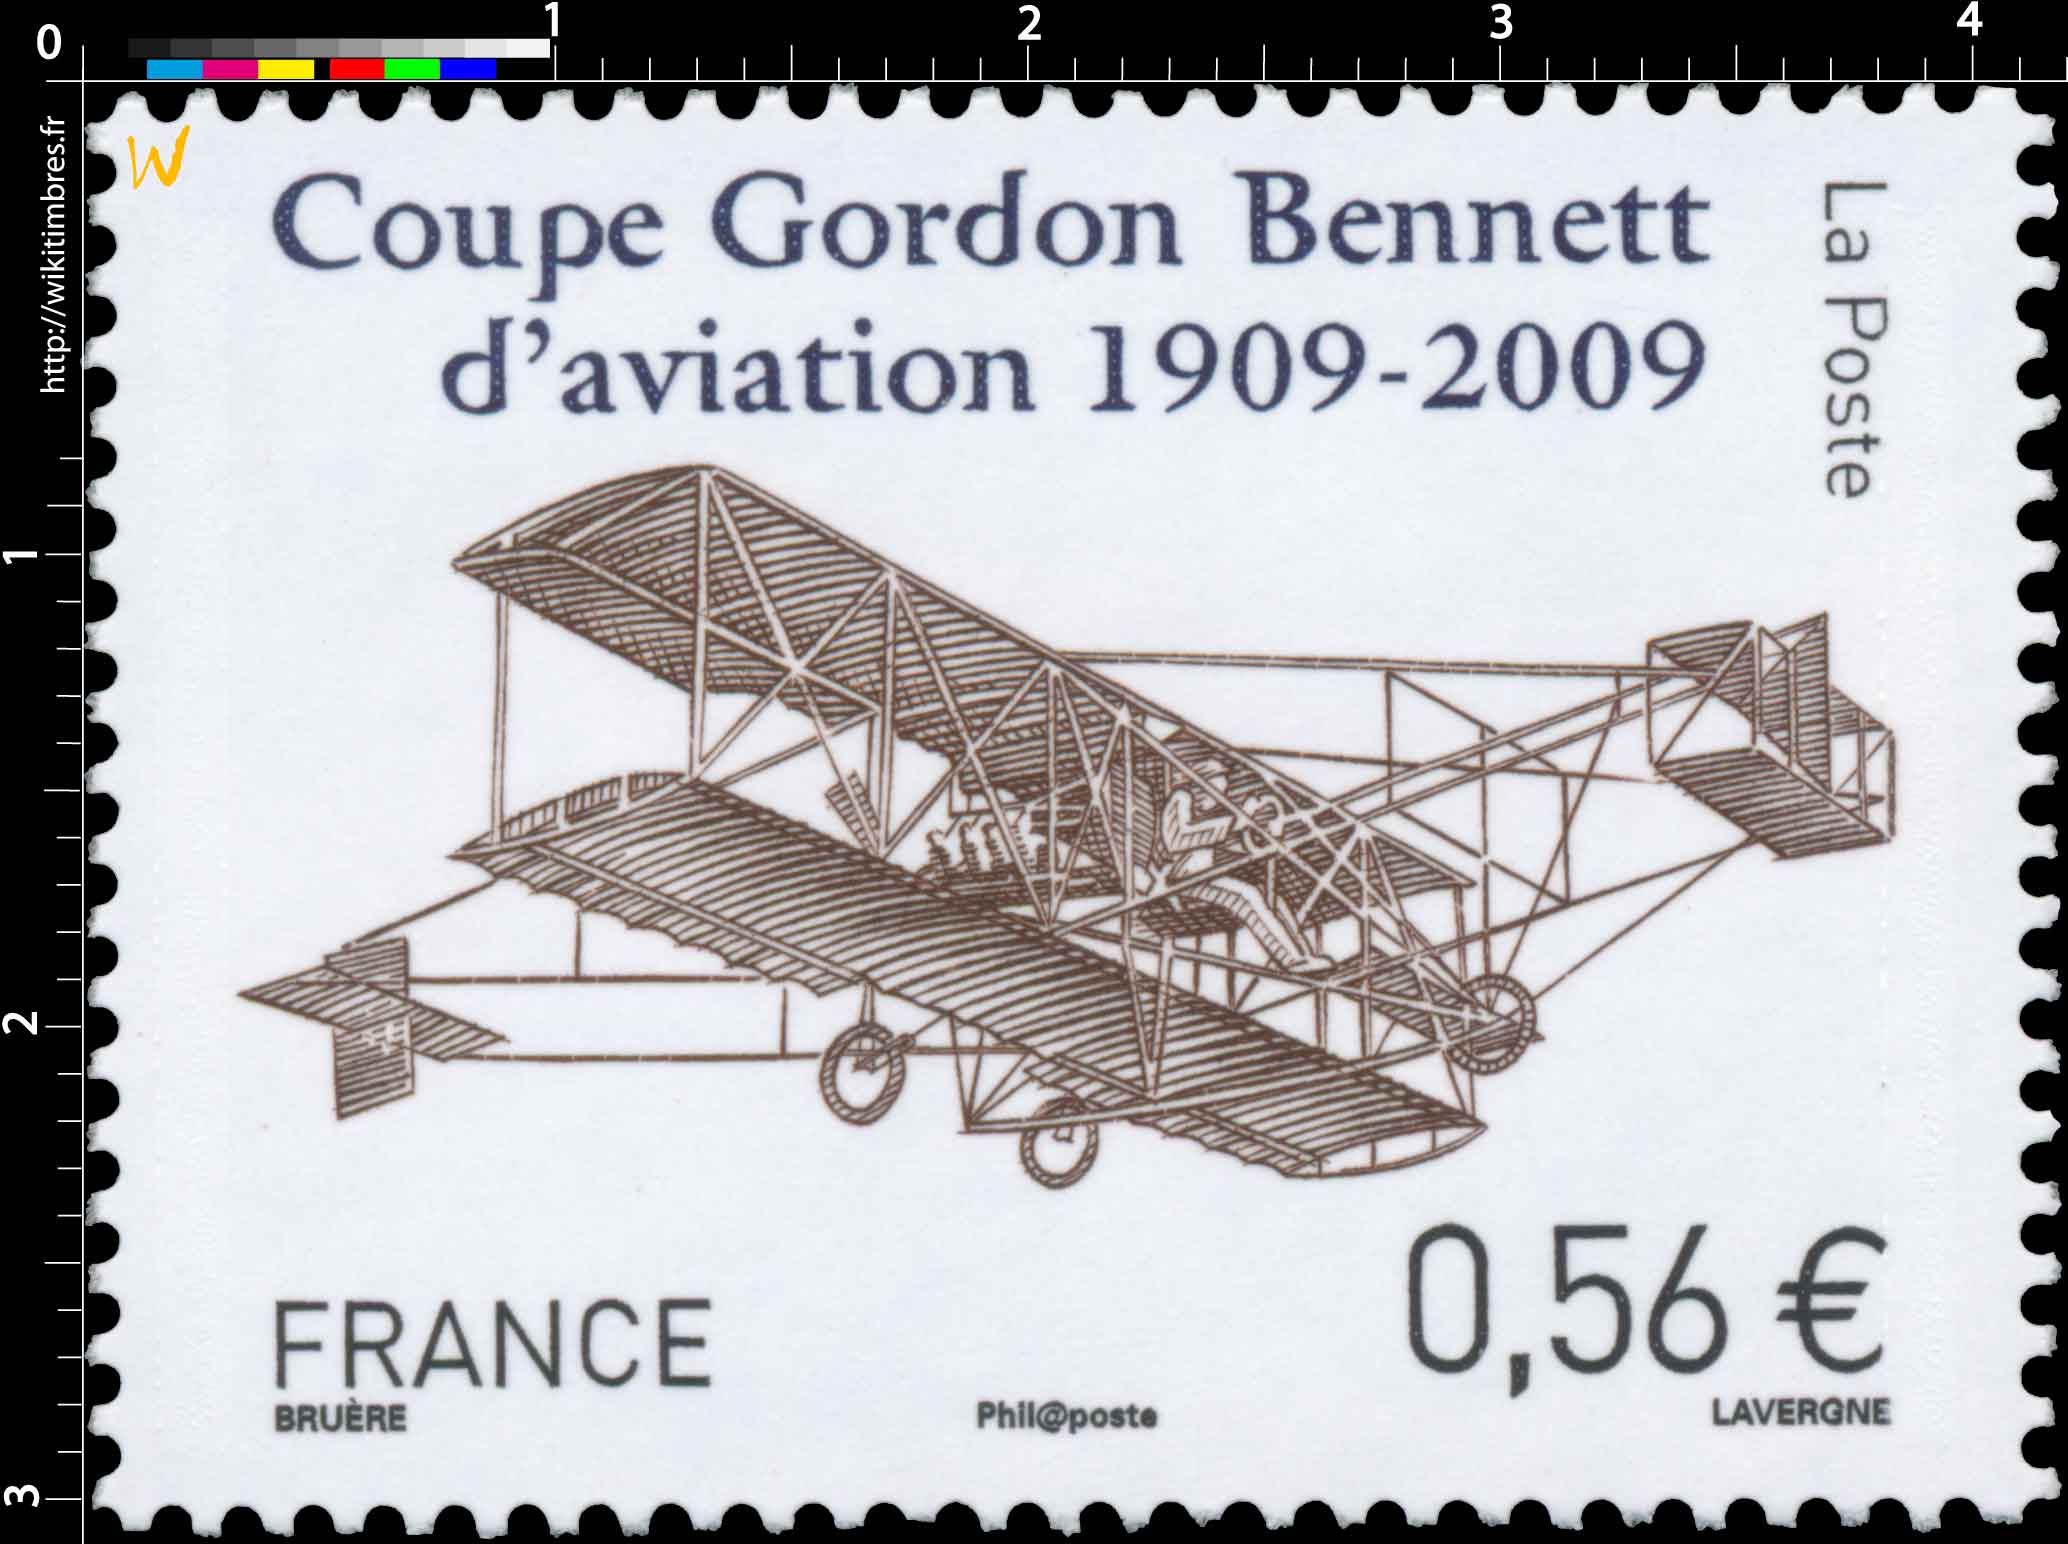 Coupe Gordon Bennett d’aviation 1909-2009